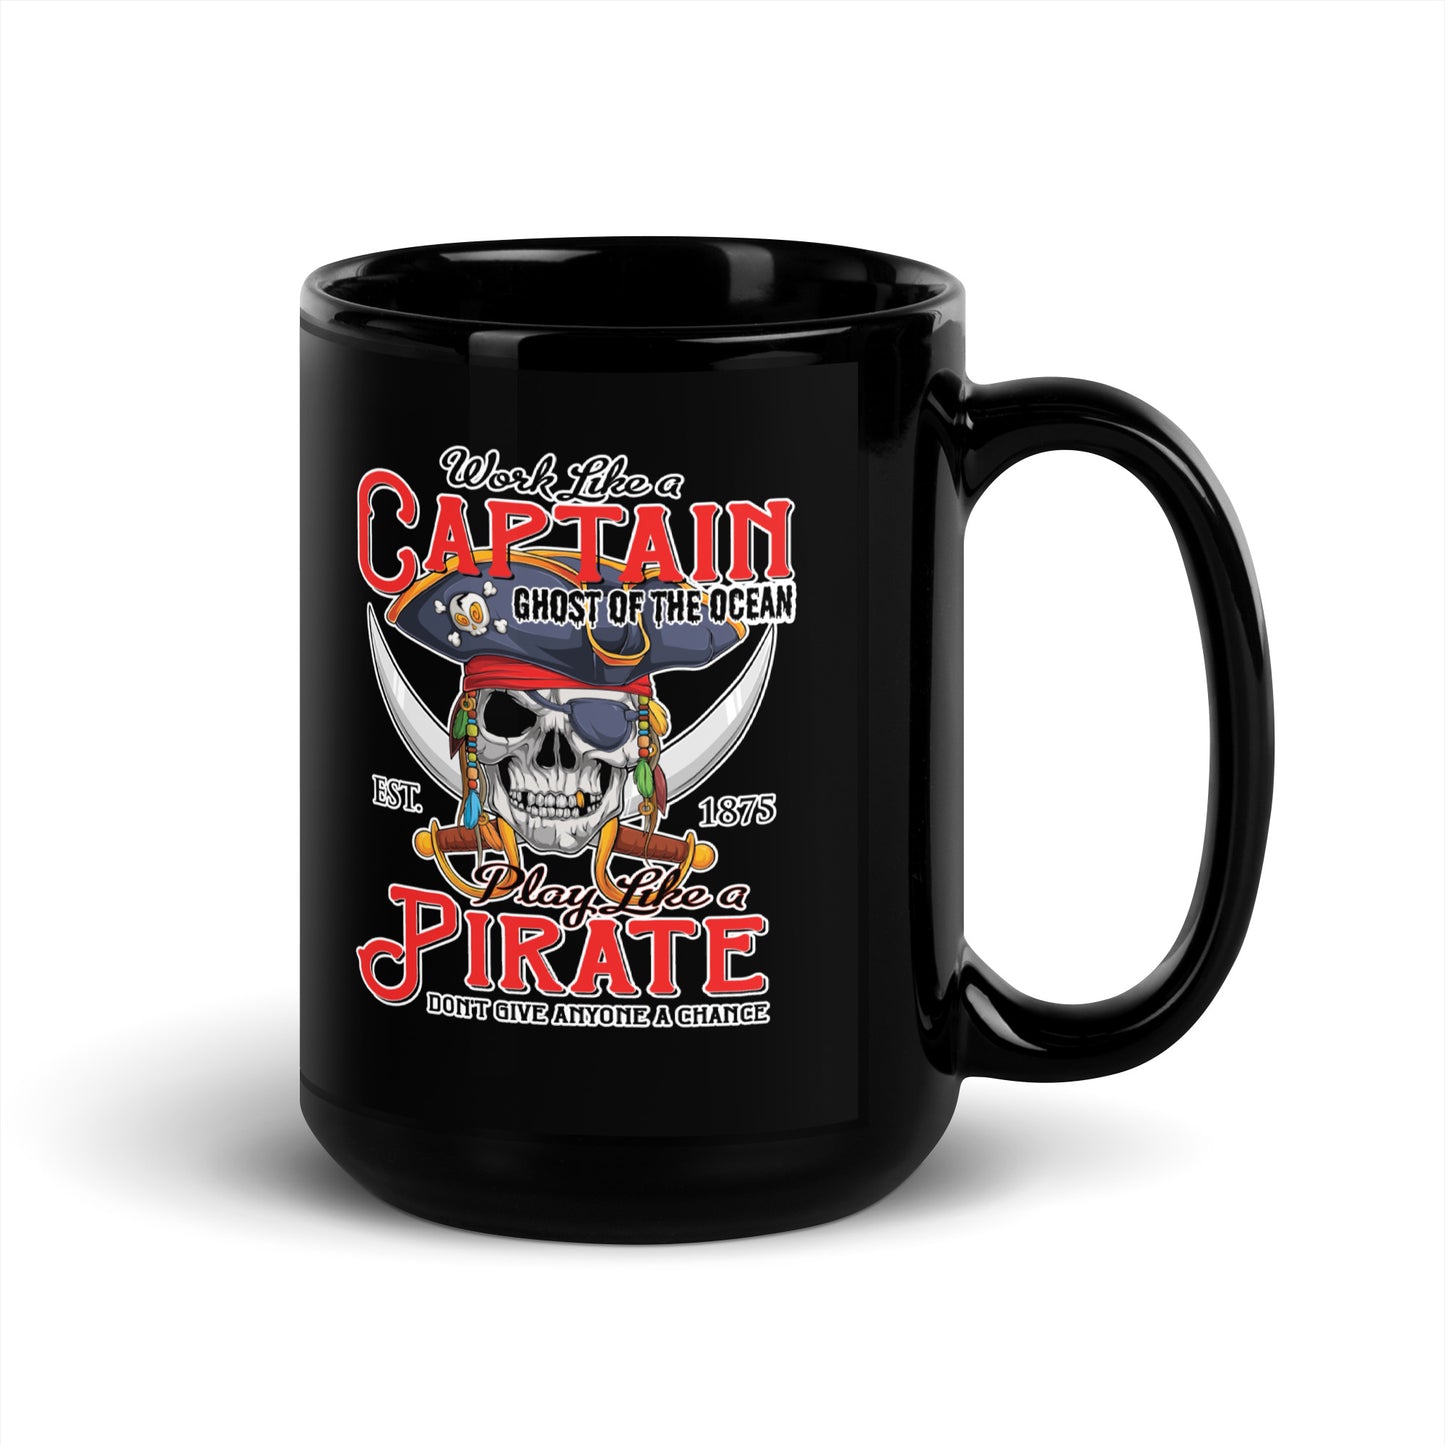 Play Like A Pirate Coffee Mug